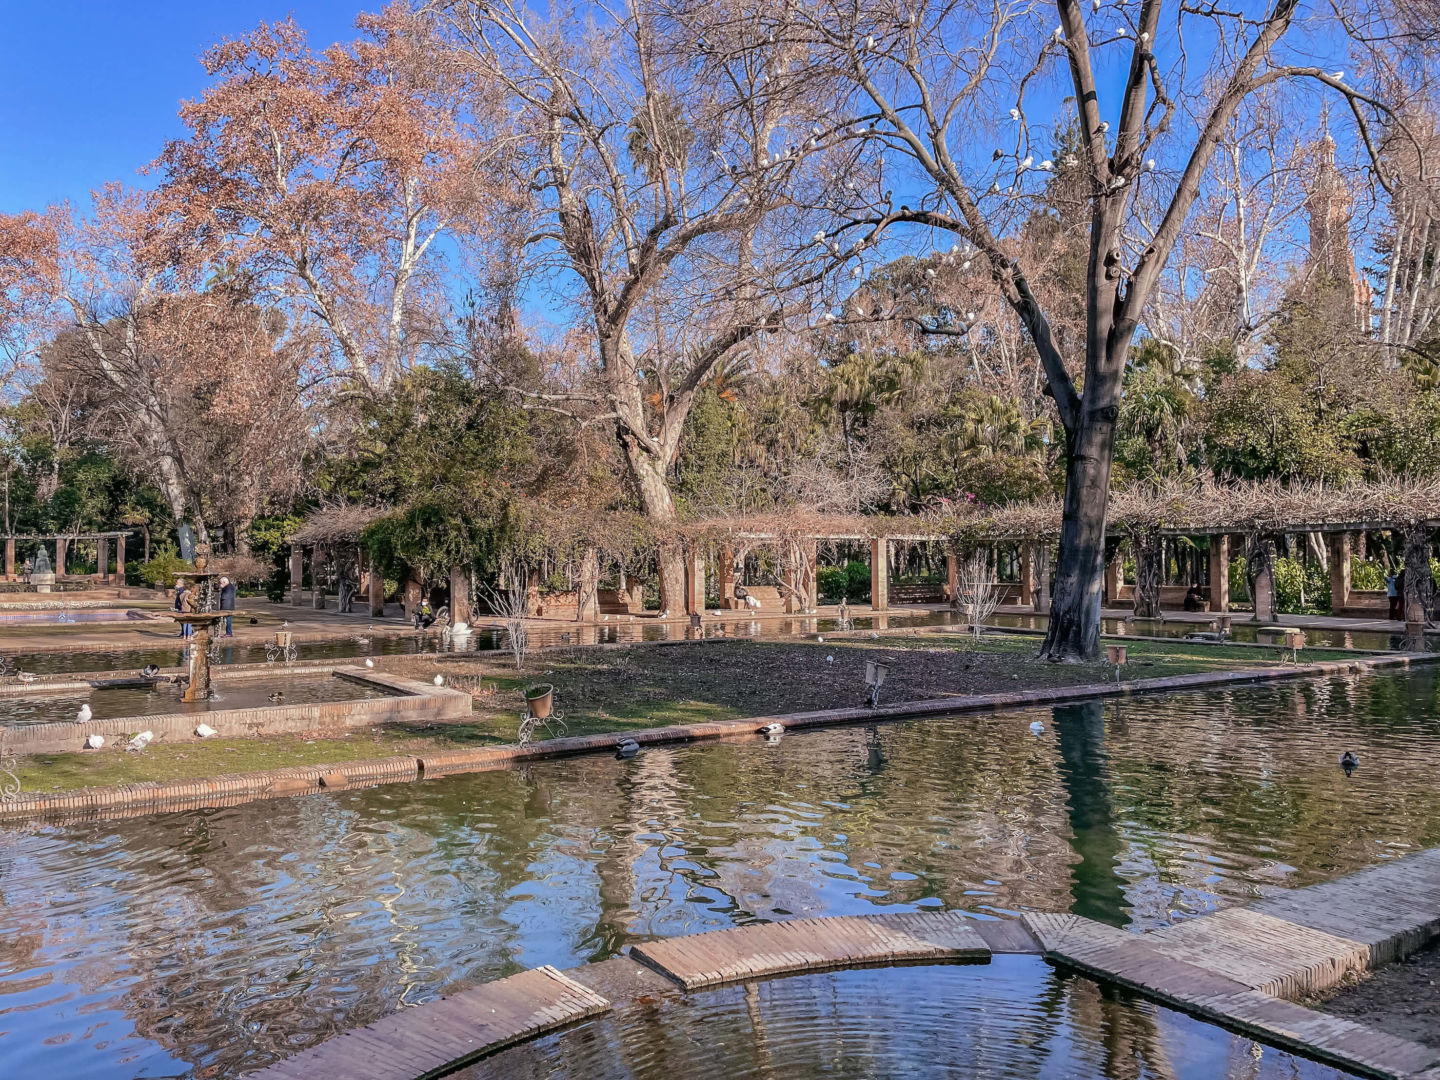 Foto de um lago e árvores secas ao redor, na Praça Maria Luiza.